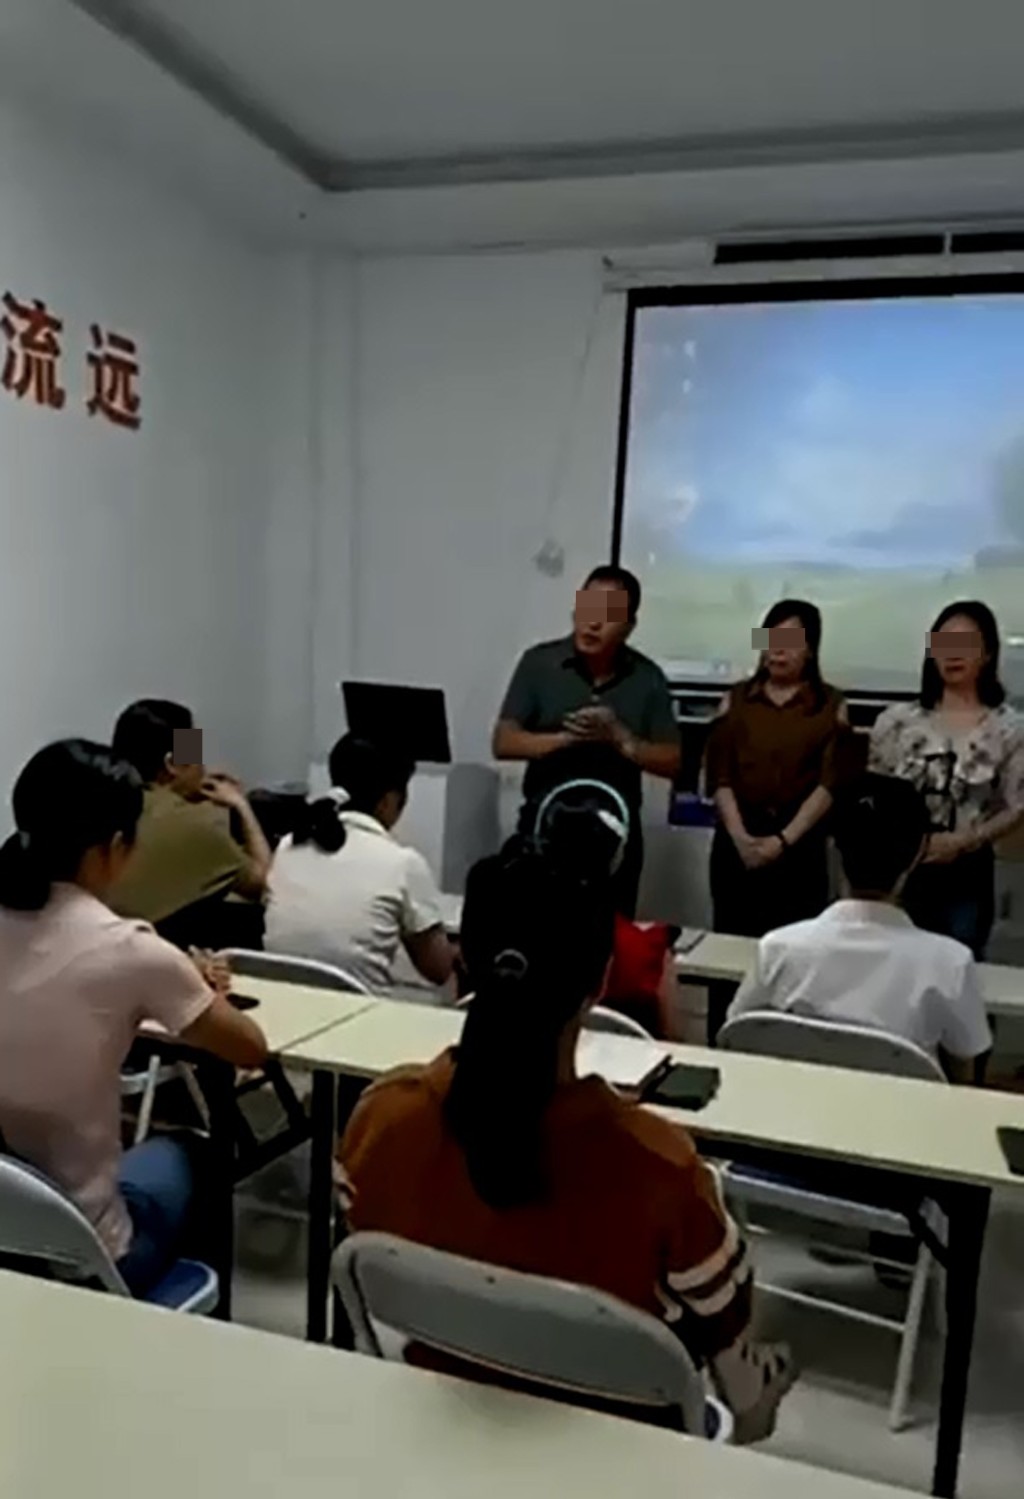 深圳中介公司发放短片，可见3名负责人(站立者)向多名女子(坐下者)介绍赴港工作的情况。